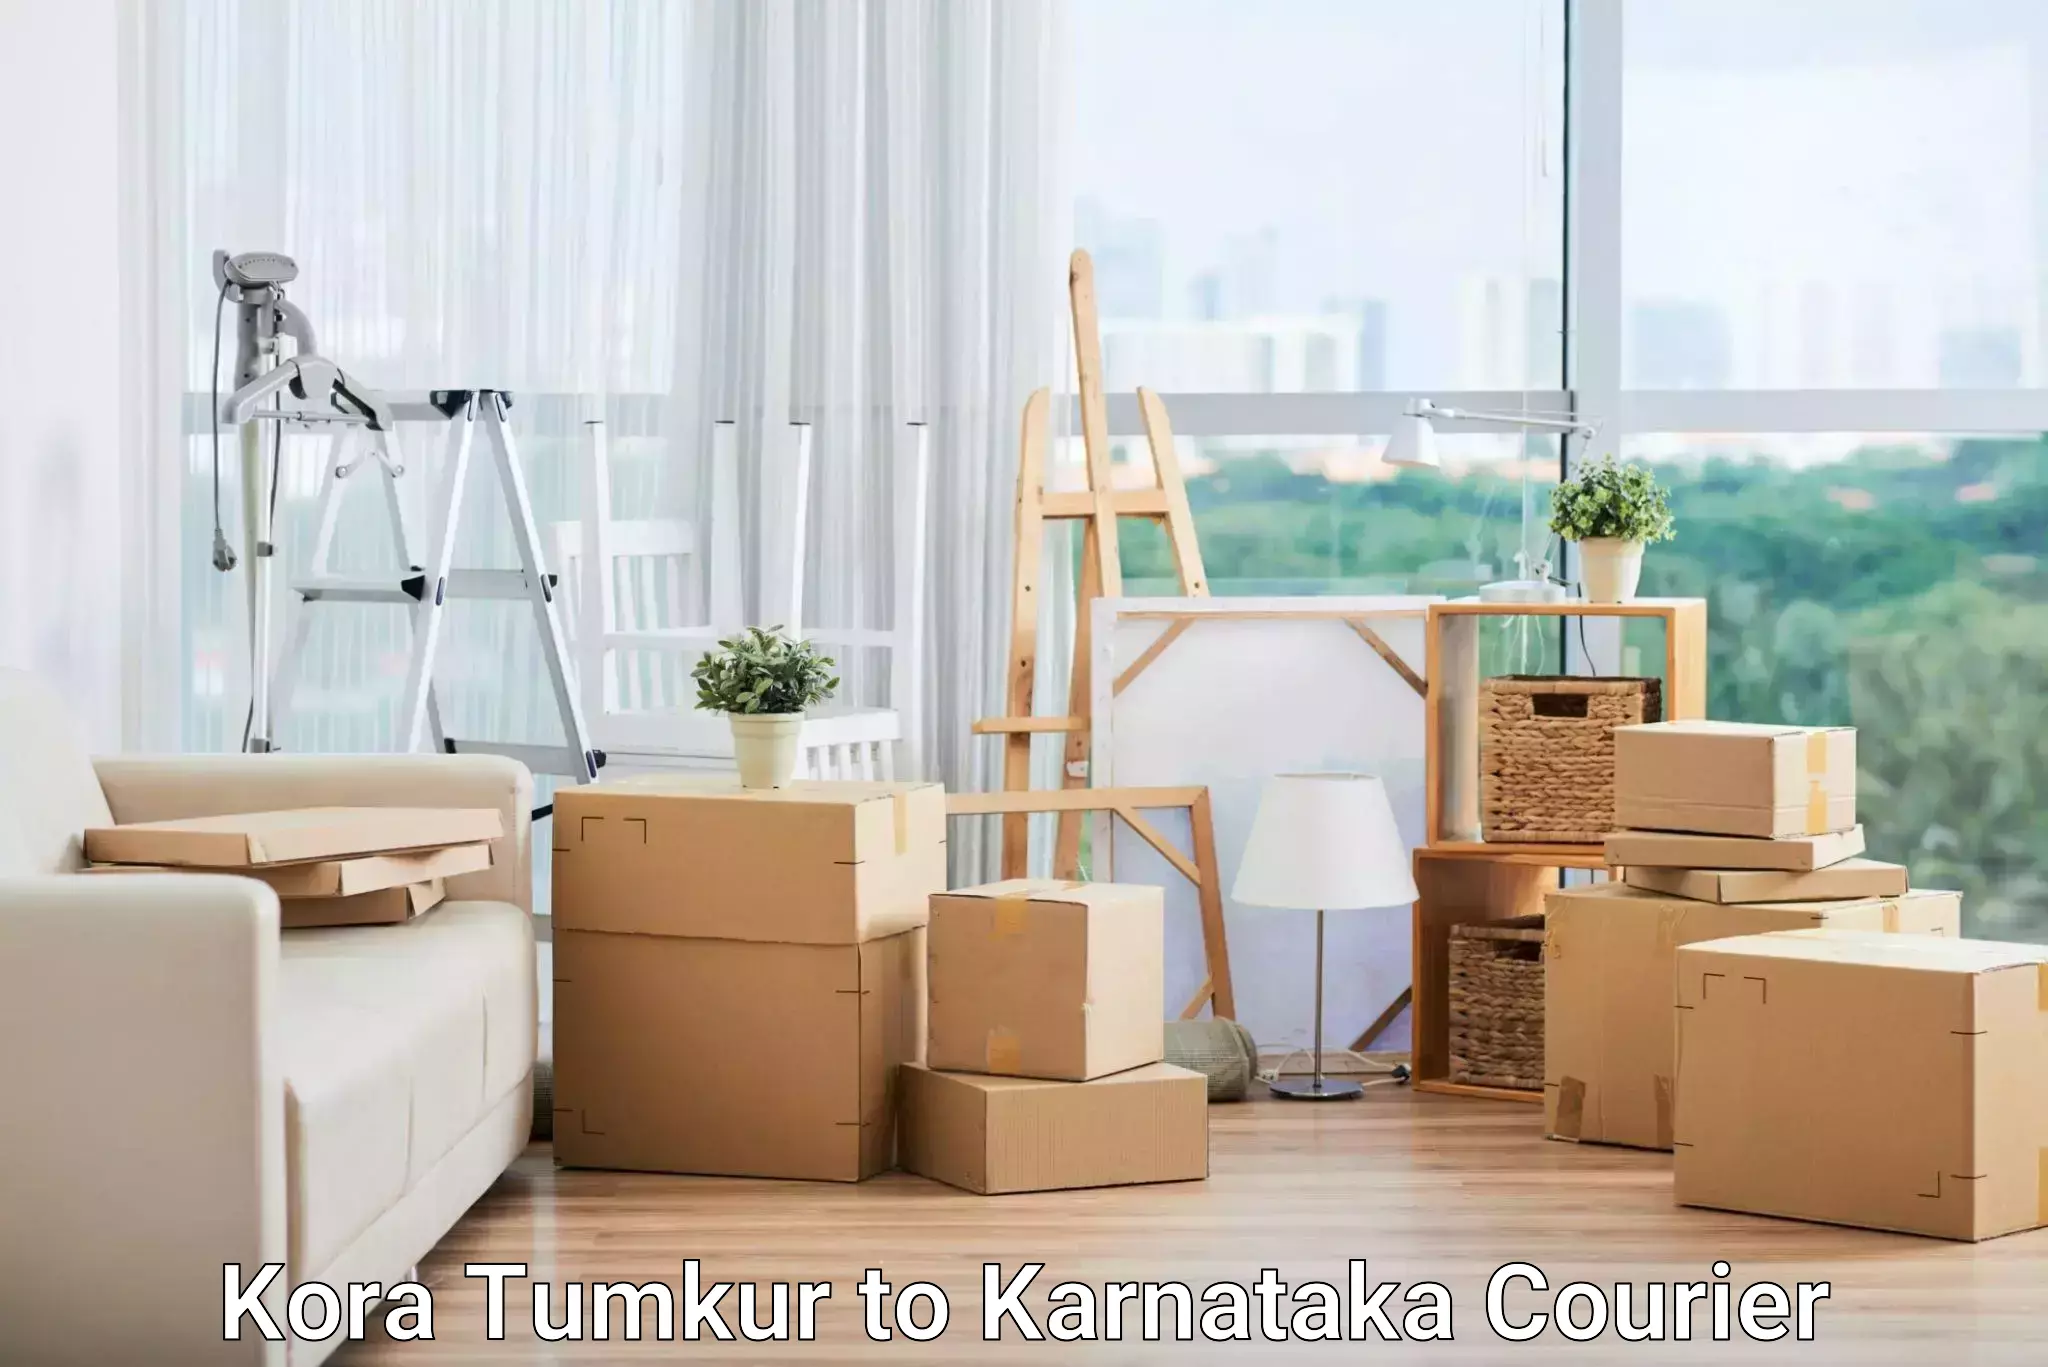 24-hour courier service Kora Tumkur to Aland Kalaburagi